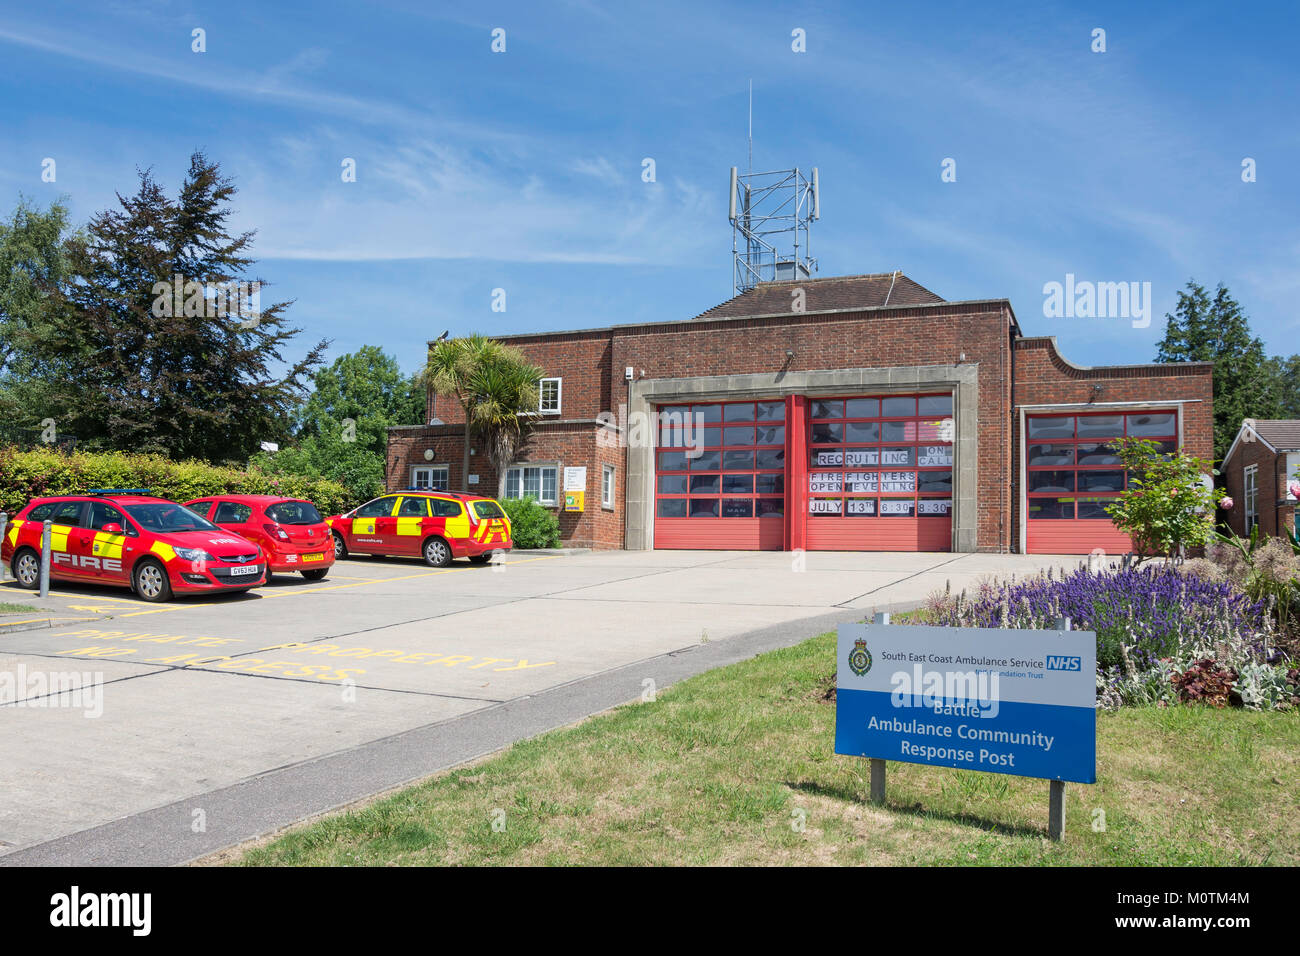 Communauté de combat Fire Station, High Street, Battle, East Sussex, Angleterre, Royaume-Uni Banque D'Images